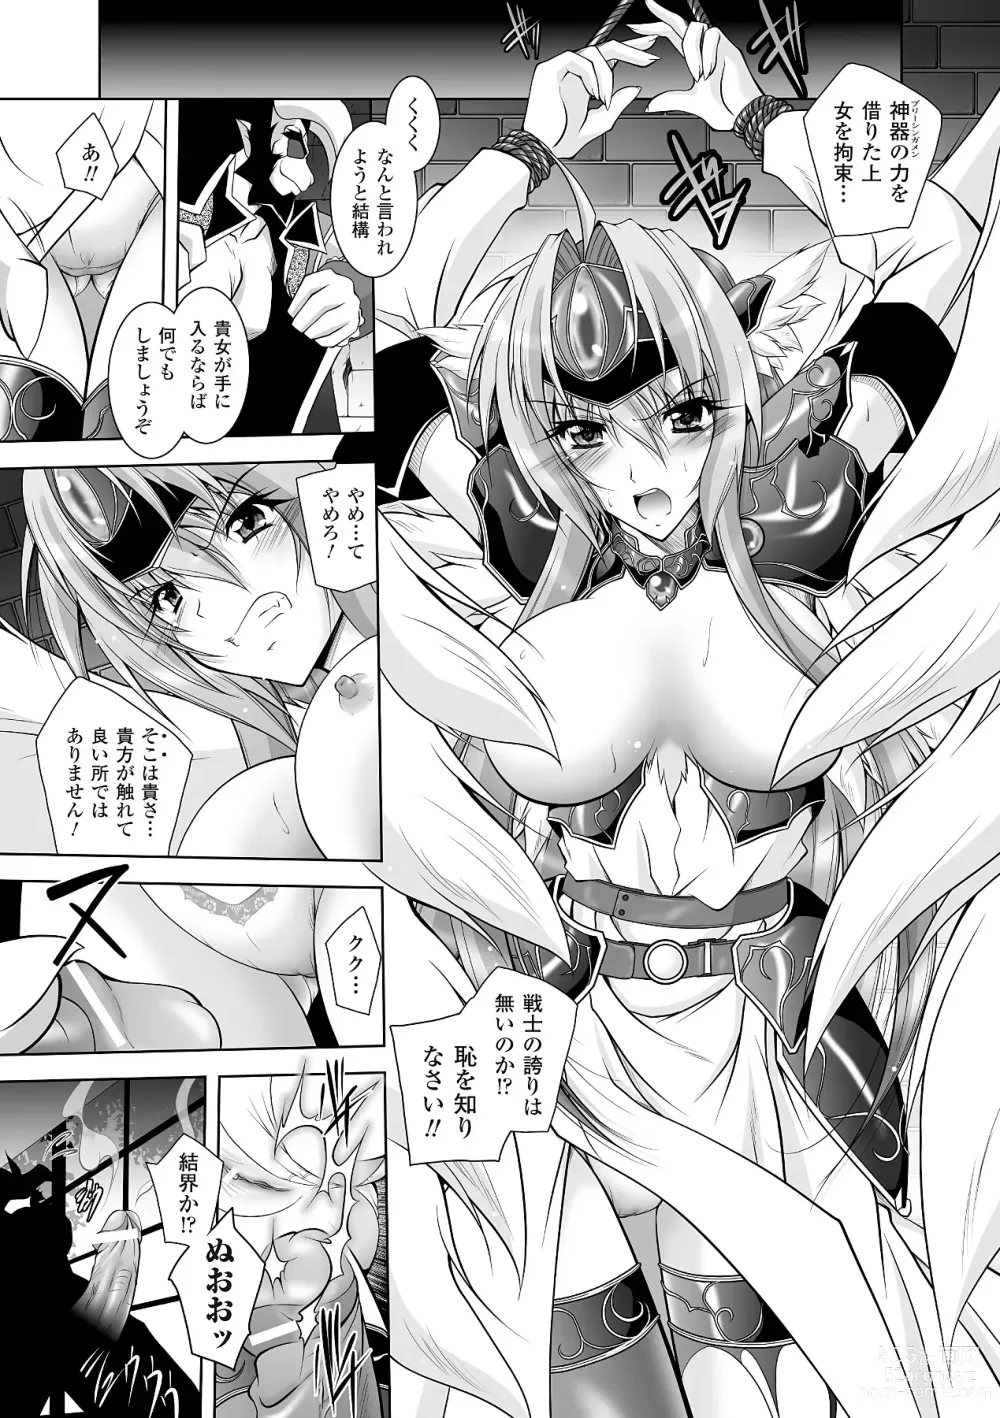 Page 11 of manga Datenshi-tachi no Rhapsody - Fallen Angels Rhapsody